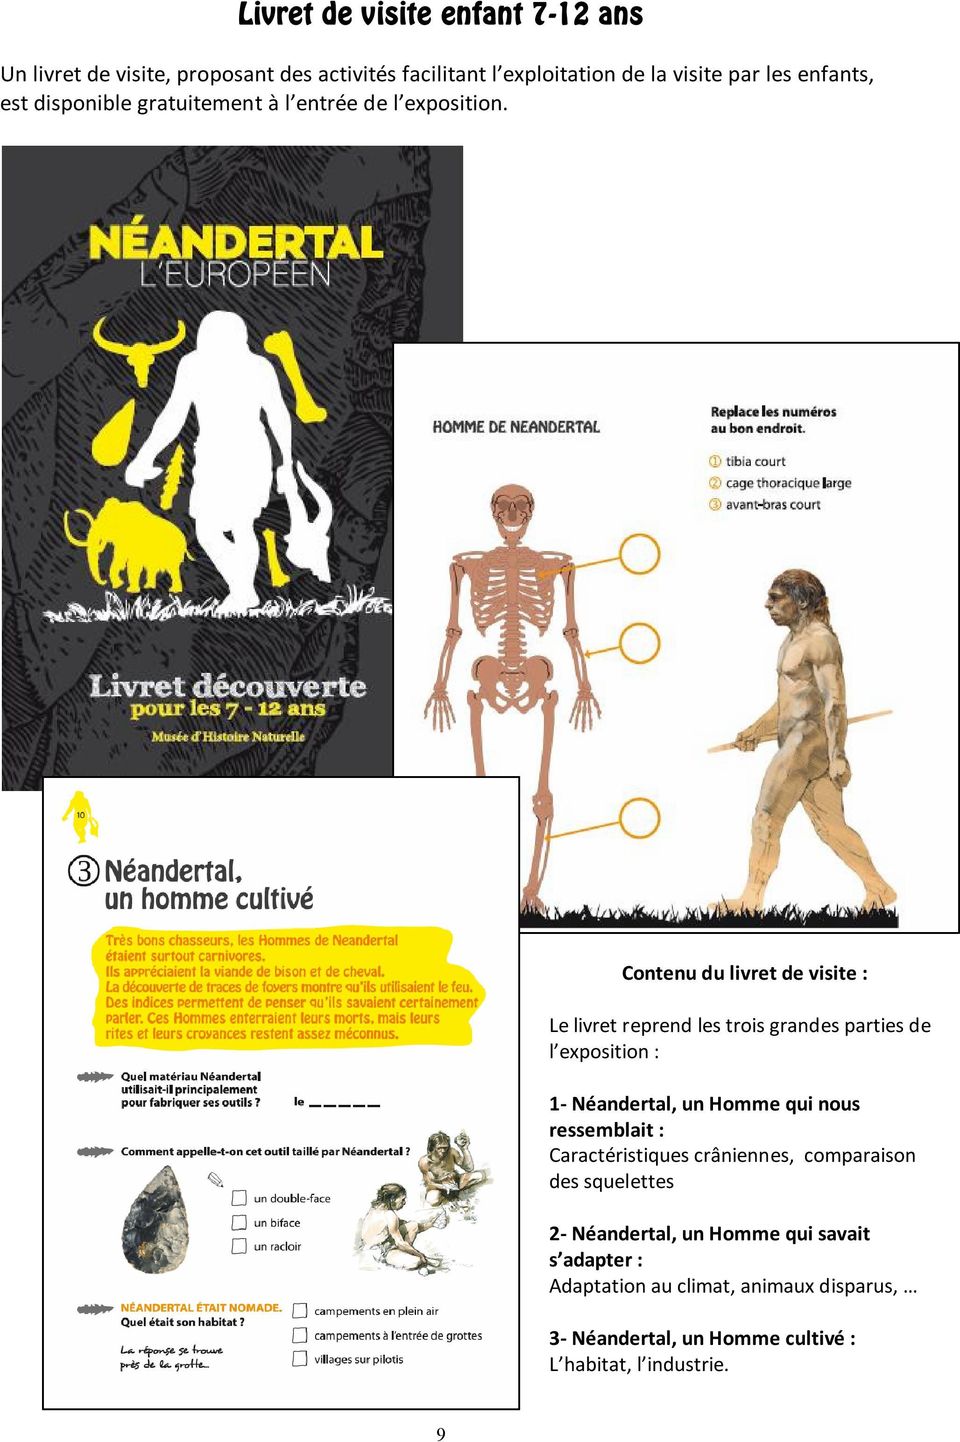 Contenu du livret de visite : Le livret reprend les trois grandes parties de l exposition : 1- Néandertal, un Homme qui nous